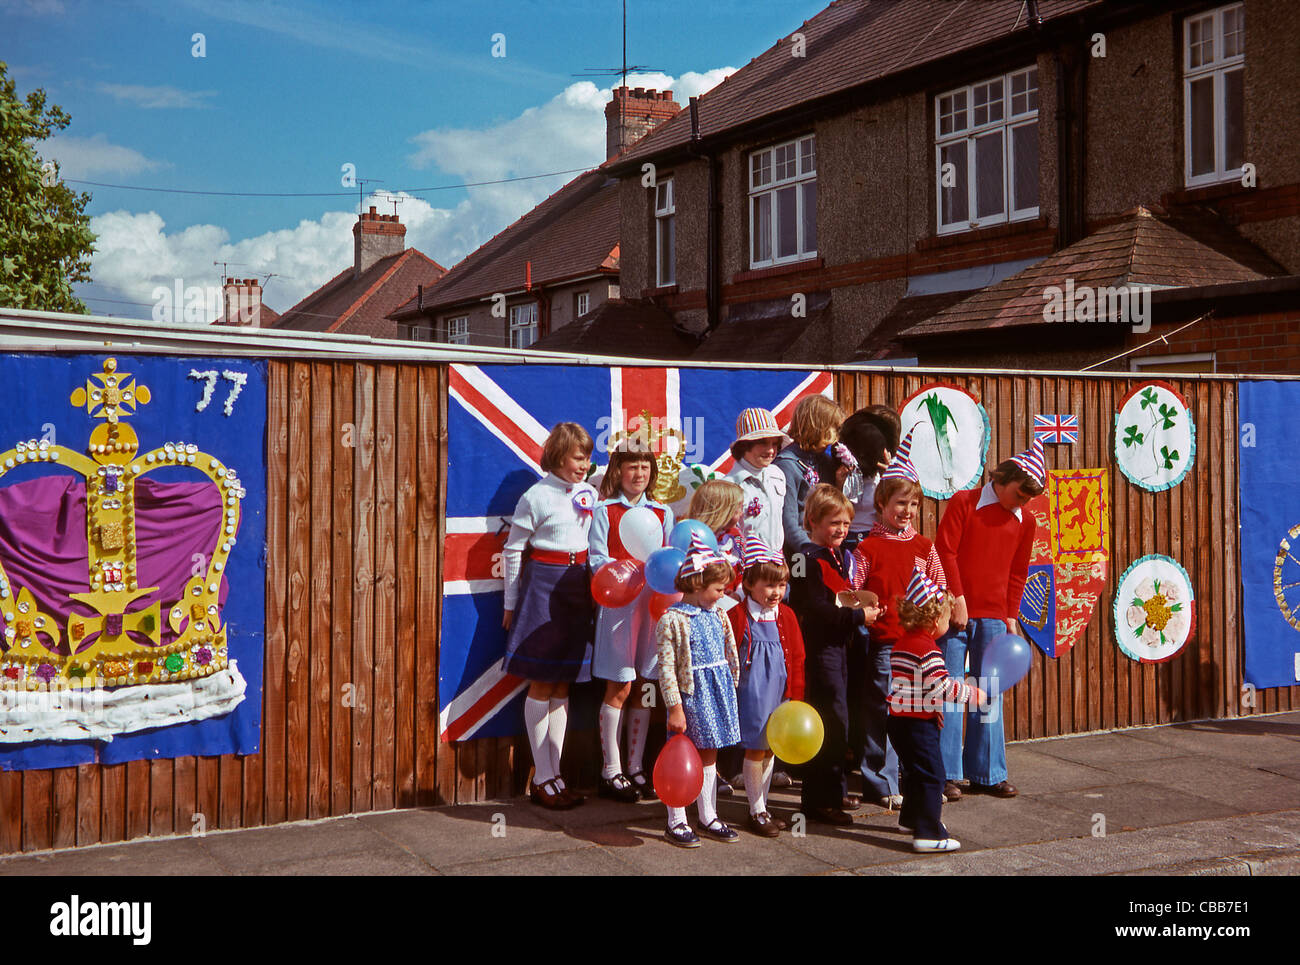 Groupe d'enfants à Jubilé d'argent de la street party, 7 juin 1977, Seaham, County Durham, Angleterre Banque D'Images